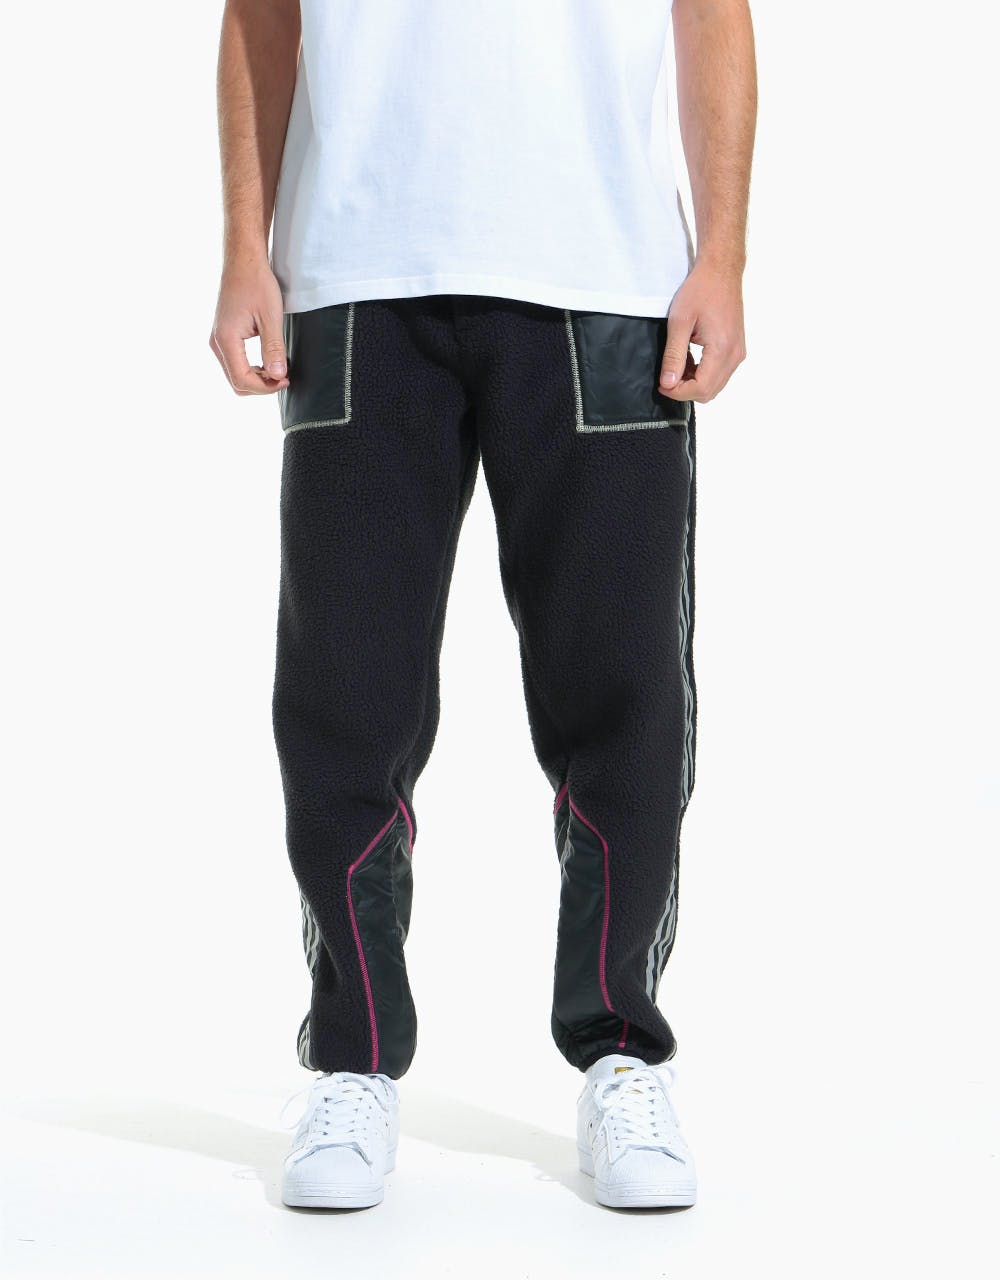 Adidas x Metropolitan Fleece Pants - Black/Yellow Tint/Real Magenta